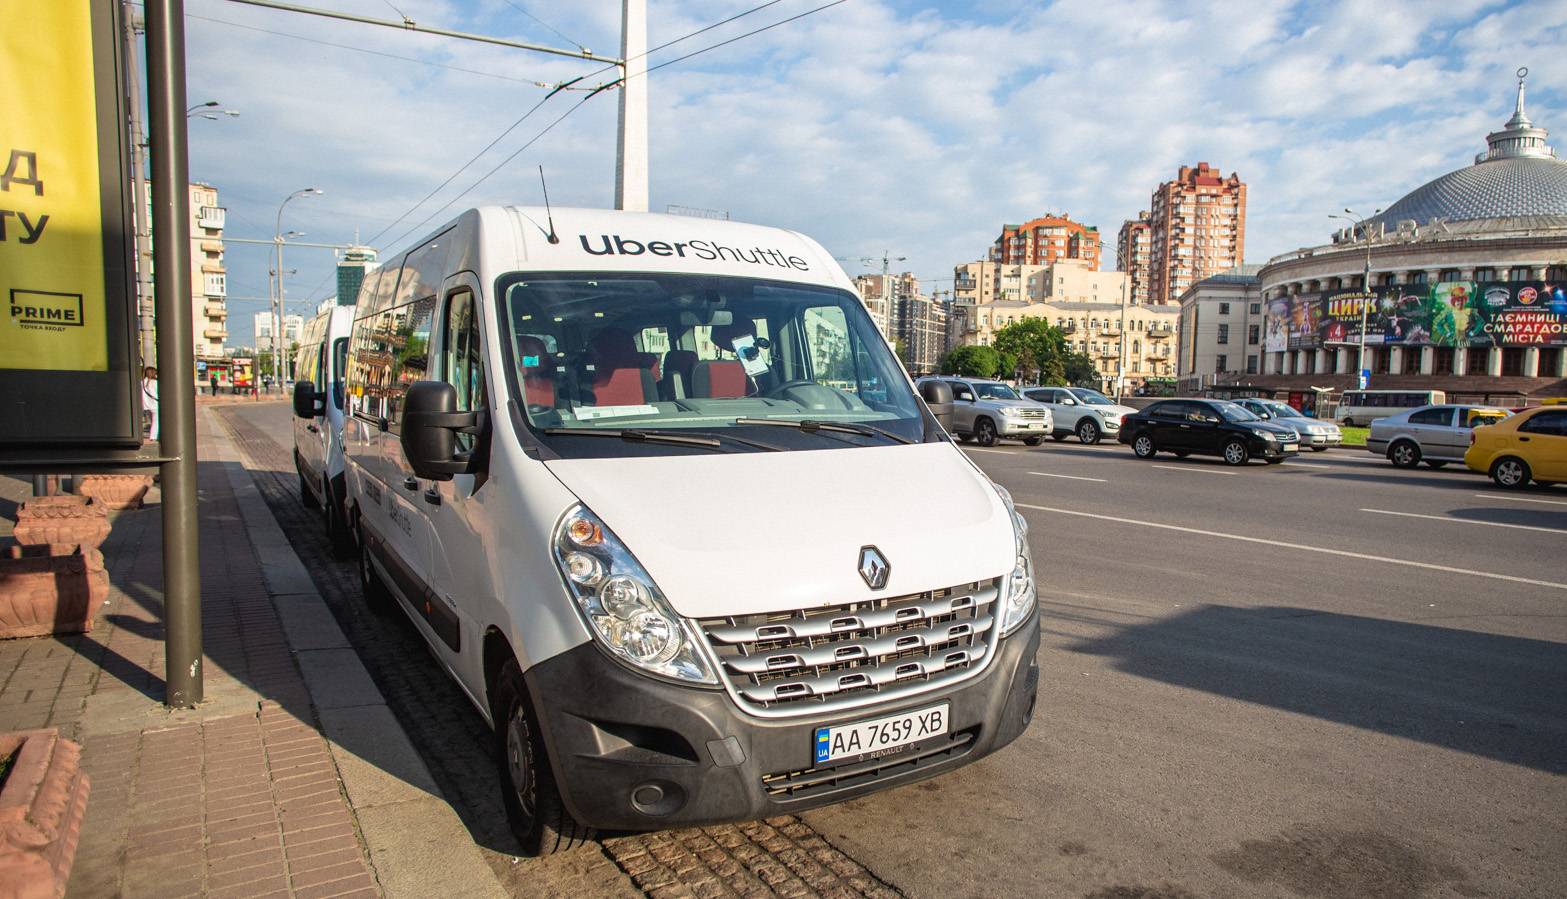 Сервис Uber Shuttle заявил о прекращении работы в Киеве с 19 ноября